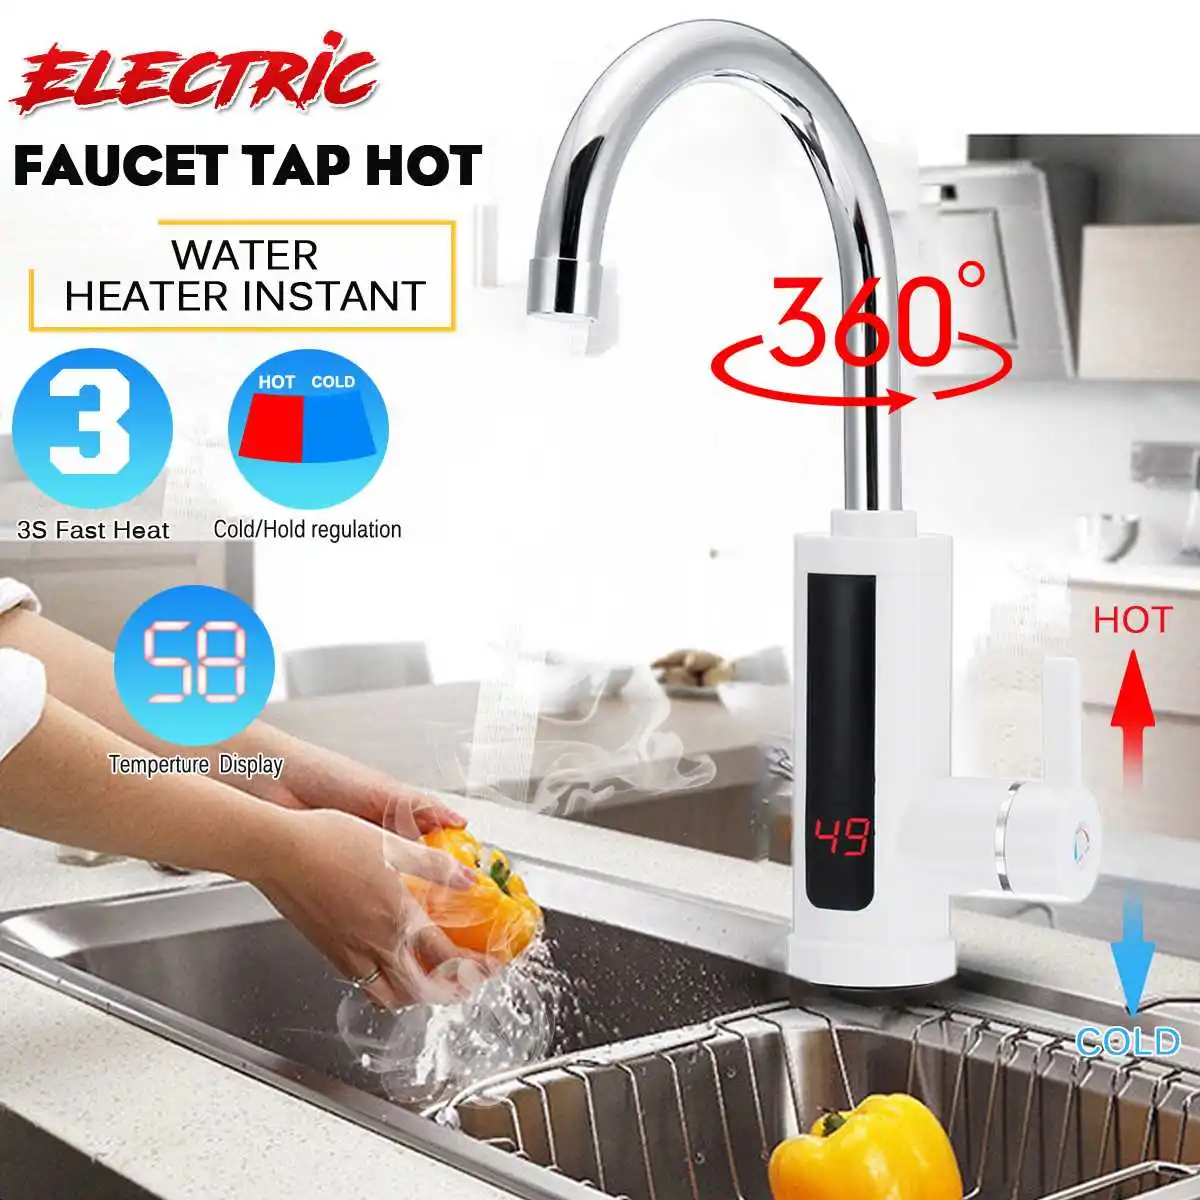 

Электрический кухонный водонагреватель, кран для мгновенной подачи горячей воды, холодный нагреватель, безрезервуарный, с евровилкой